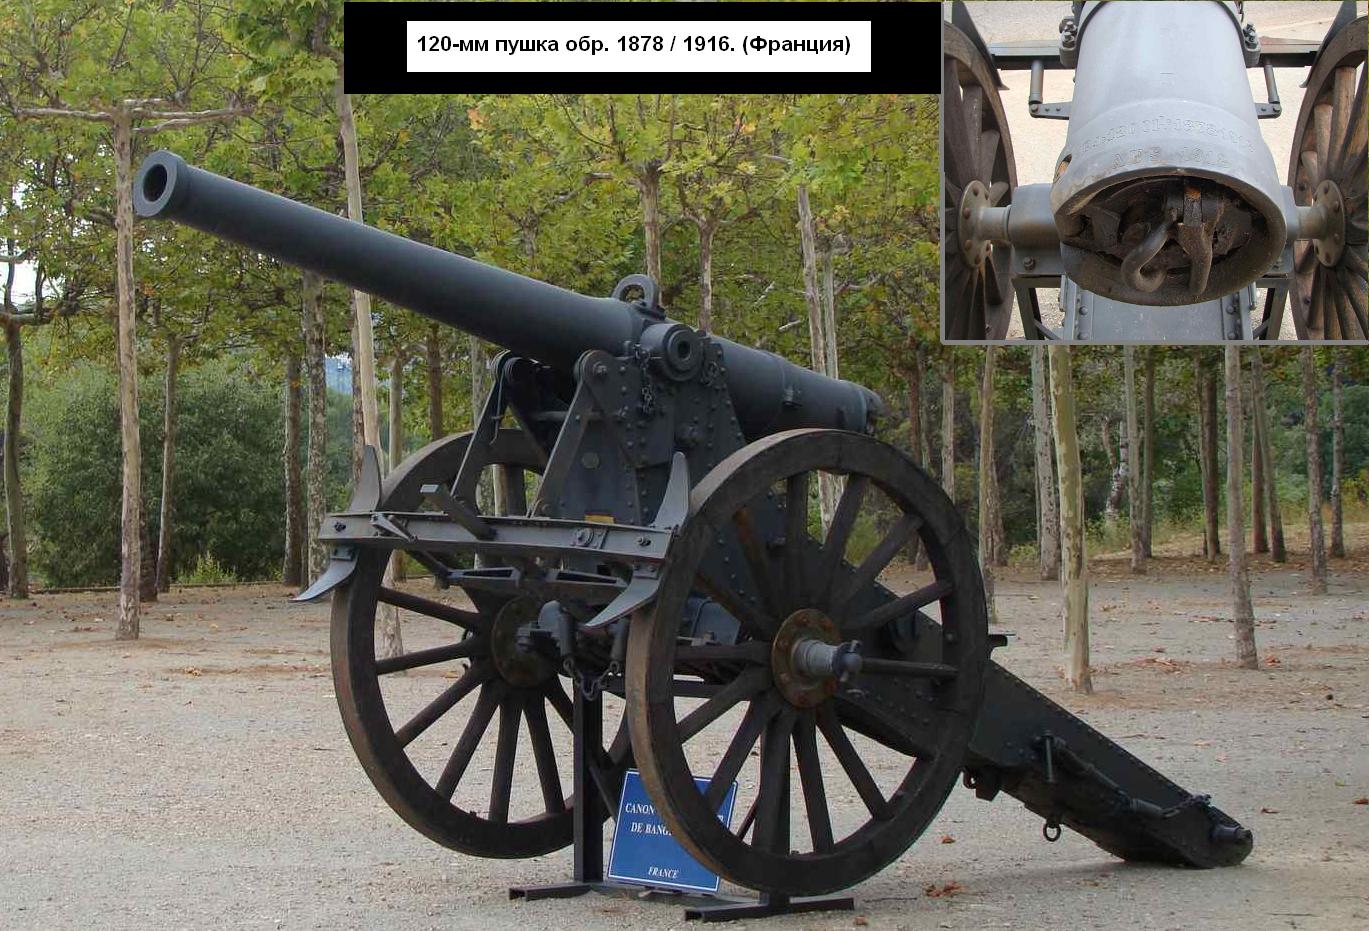 Фотография: 120-мм пушка обр. 1878/1916 из французского музея артиллерии. Общий вид и устройство затвора